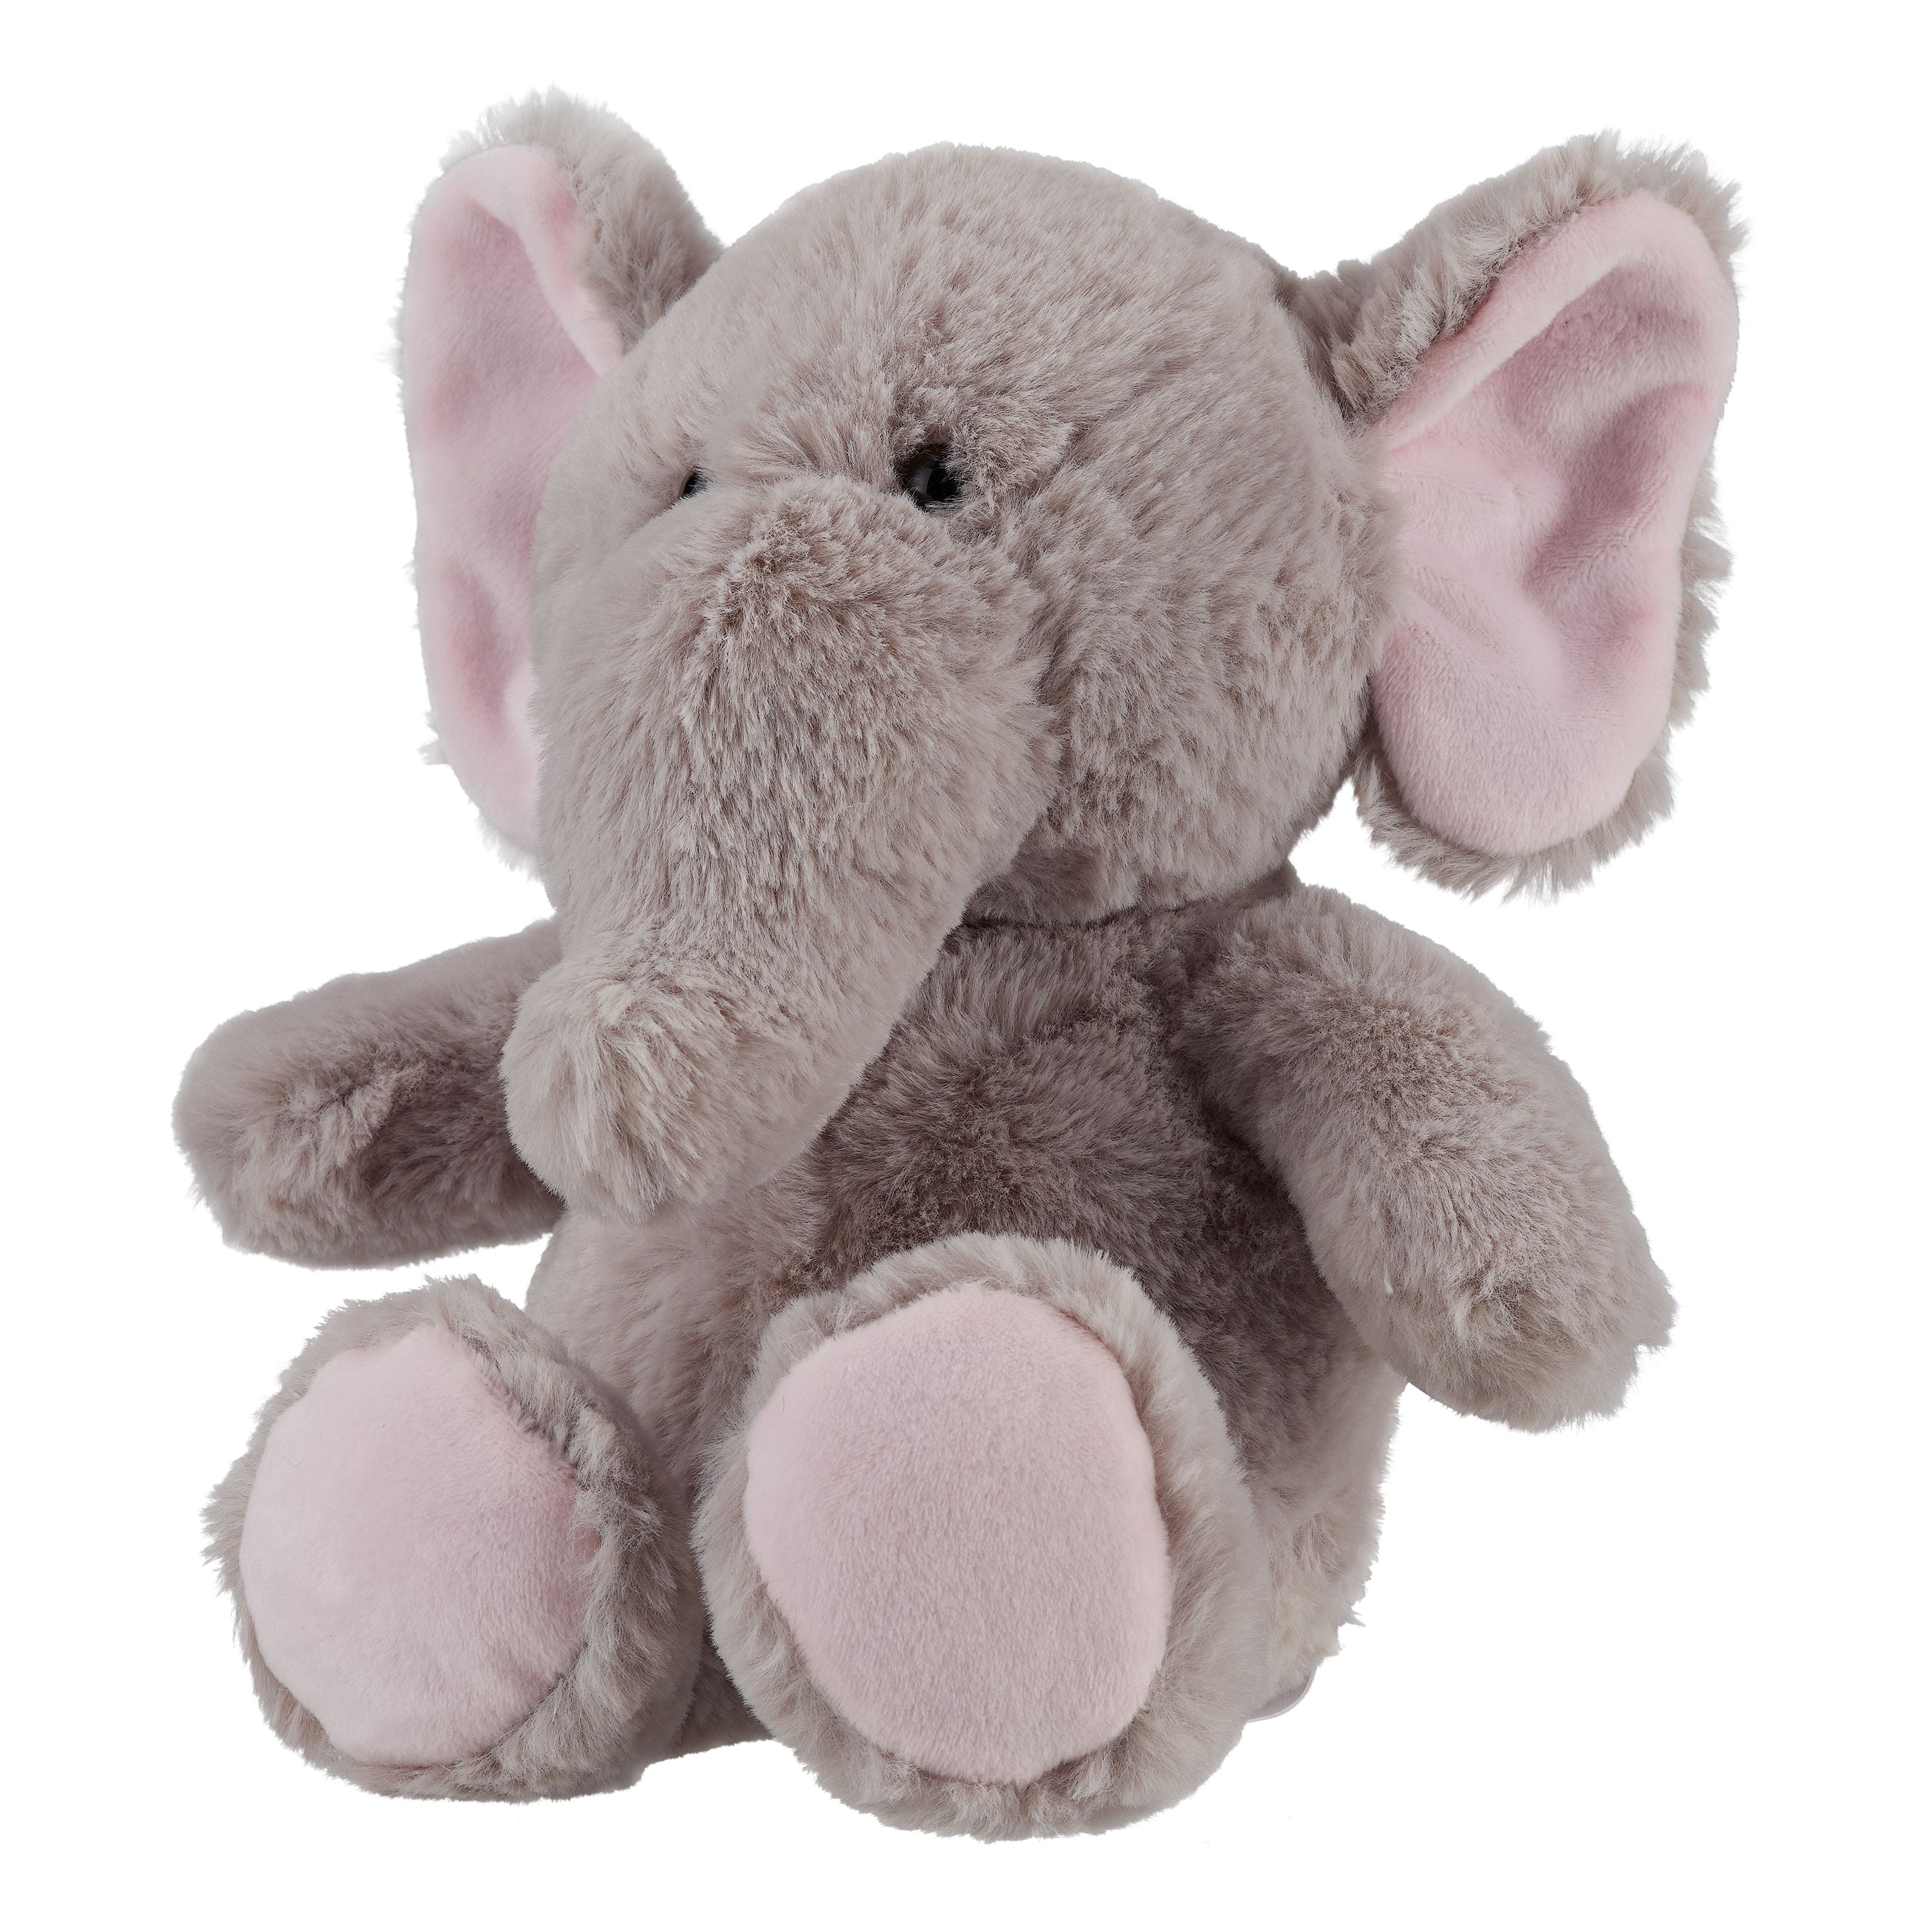 stuffed elephant walmart